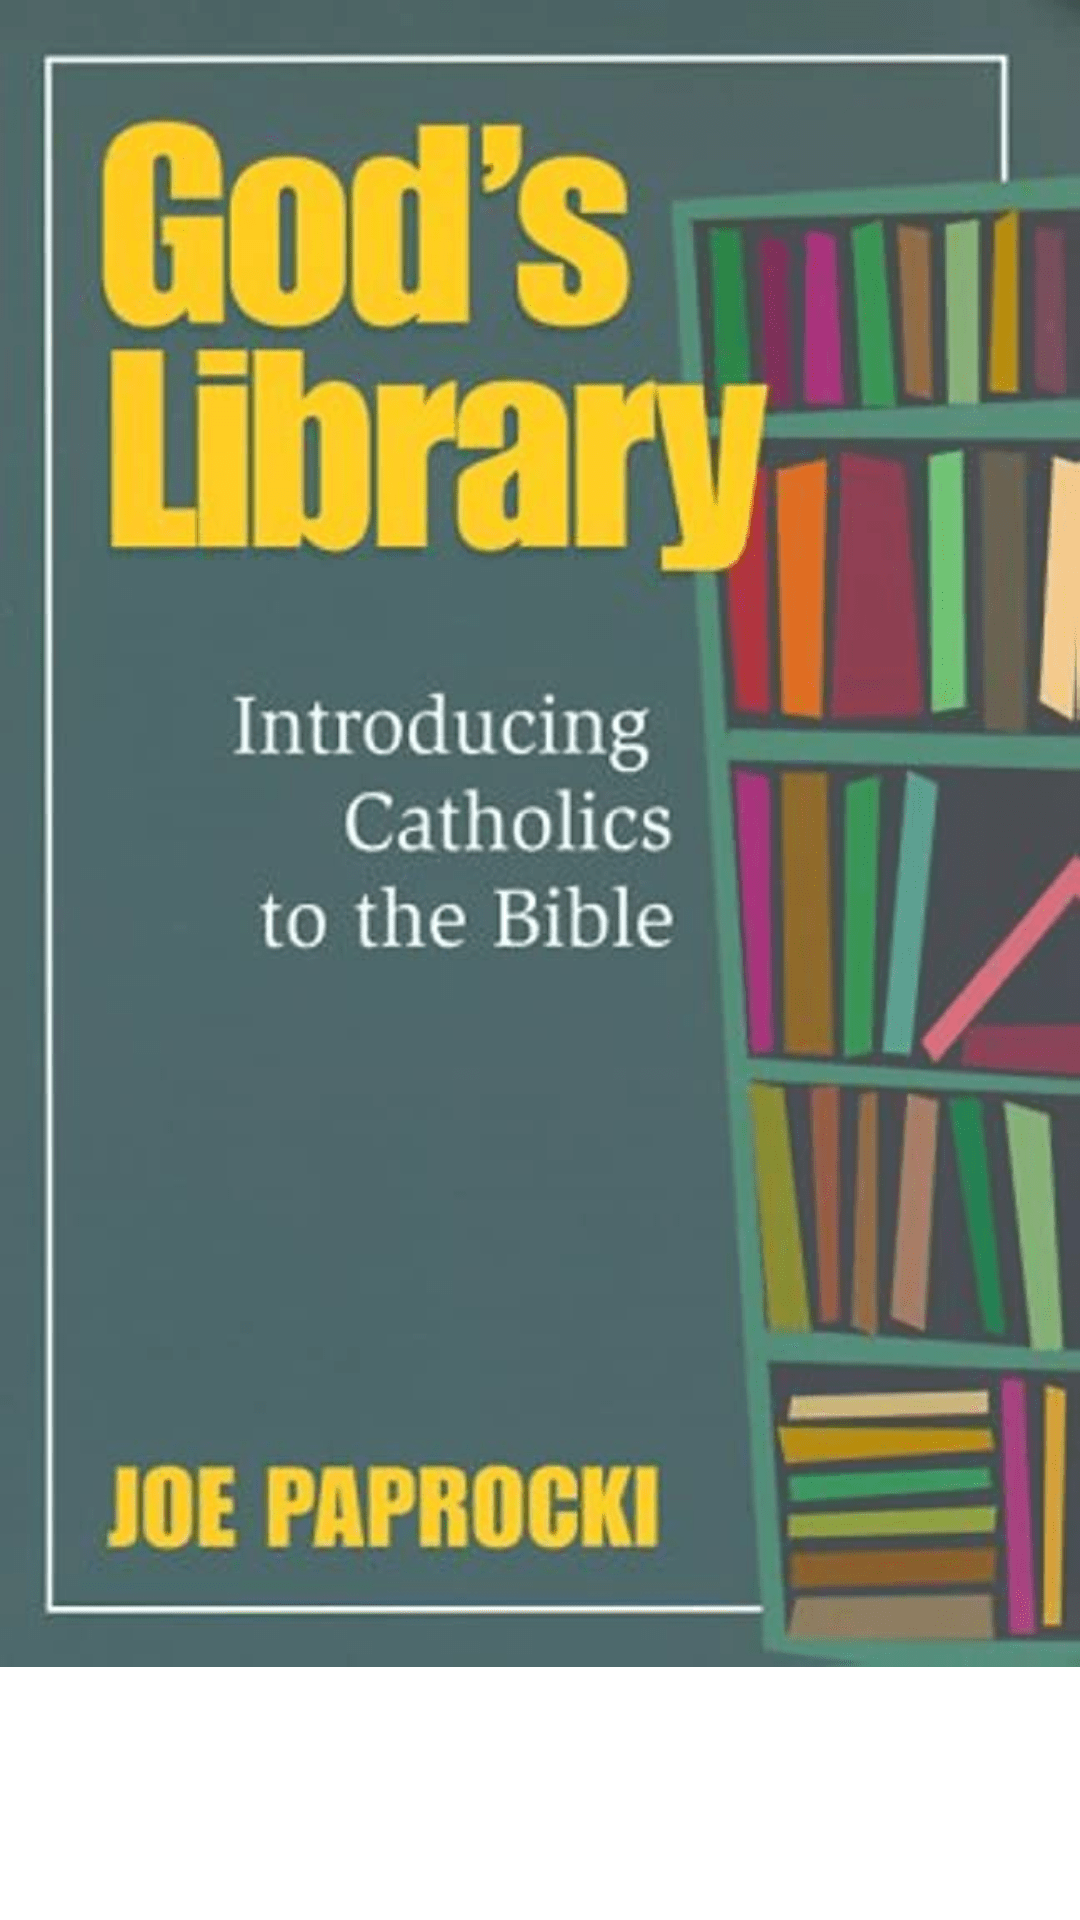 God's Library by Joe Paprocki